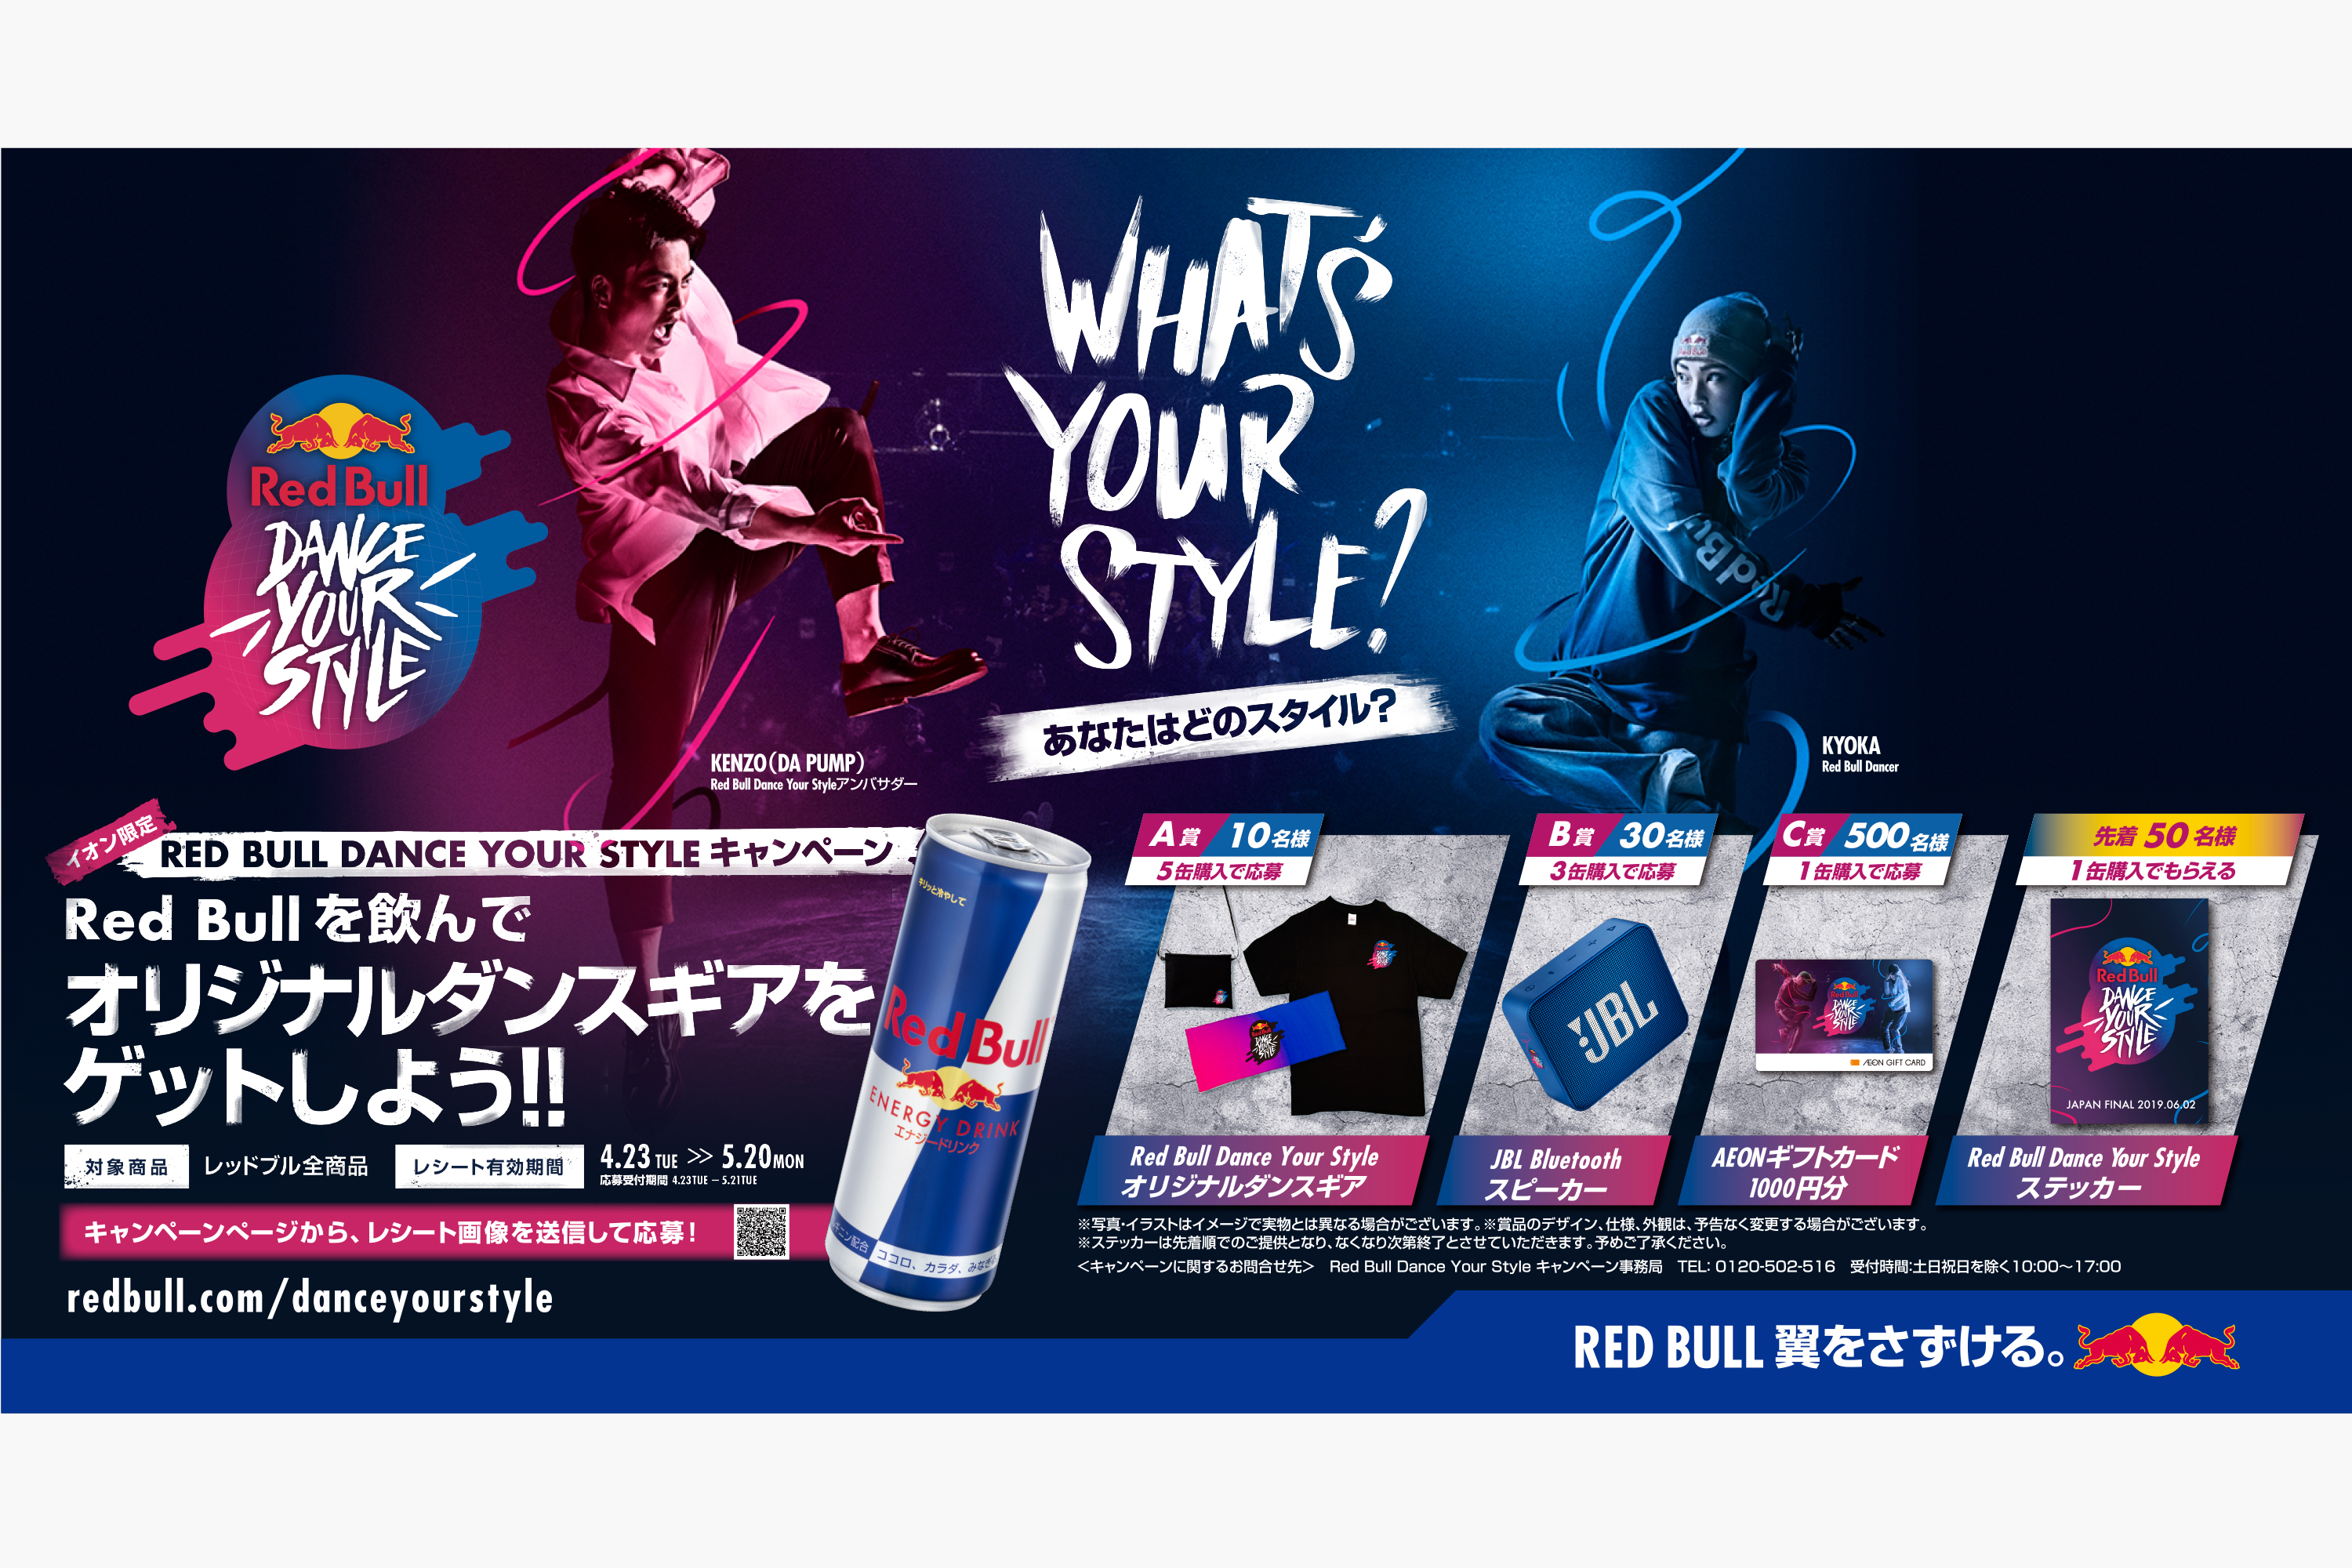 Red Bull Dance Your Styleオリジナルアイテムが当たる レッドブル ジャパン株式会社のプレスリリース